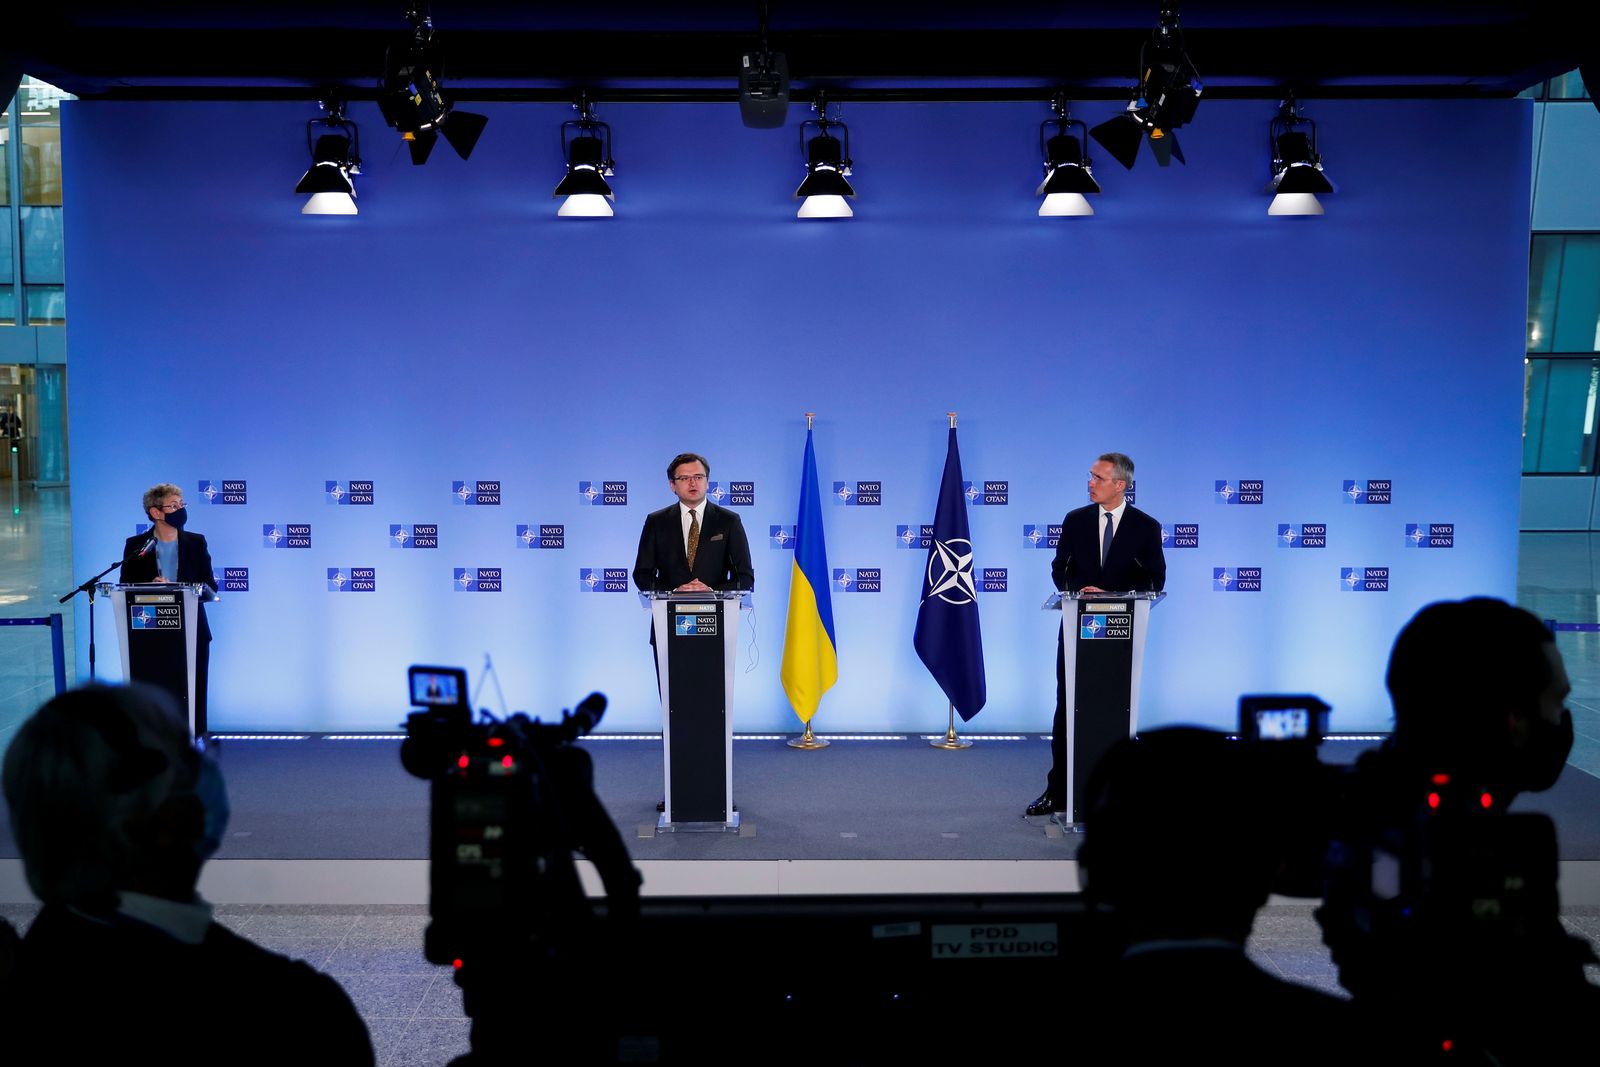 الأمين العام لحلف الناتو ينس ستولتنبرغ (يمين) ووزير الخارجية الأوكراني دميترو كوليبا يعقدان مؤتمراً صحفياً عقب اجتماعهما في مقر الناتو في بروكسل - 13 أبريل 2021 -  - REUTERS